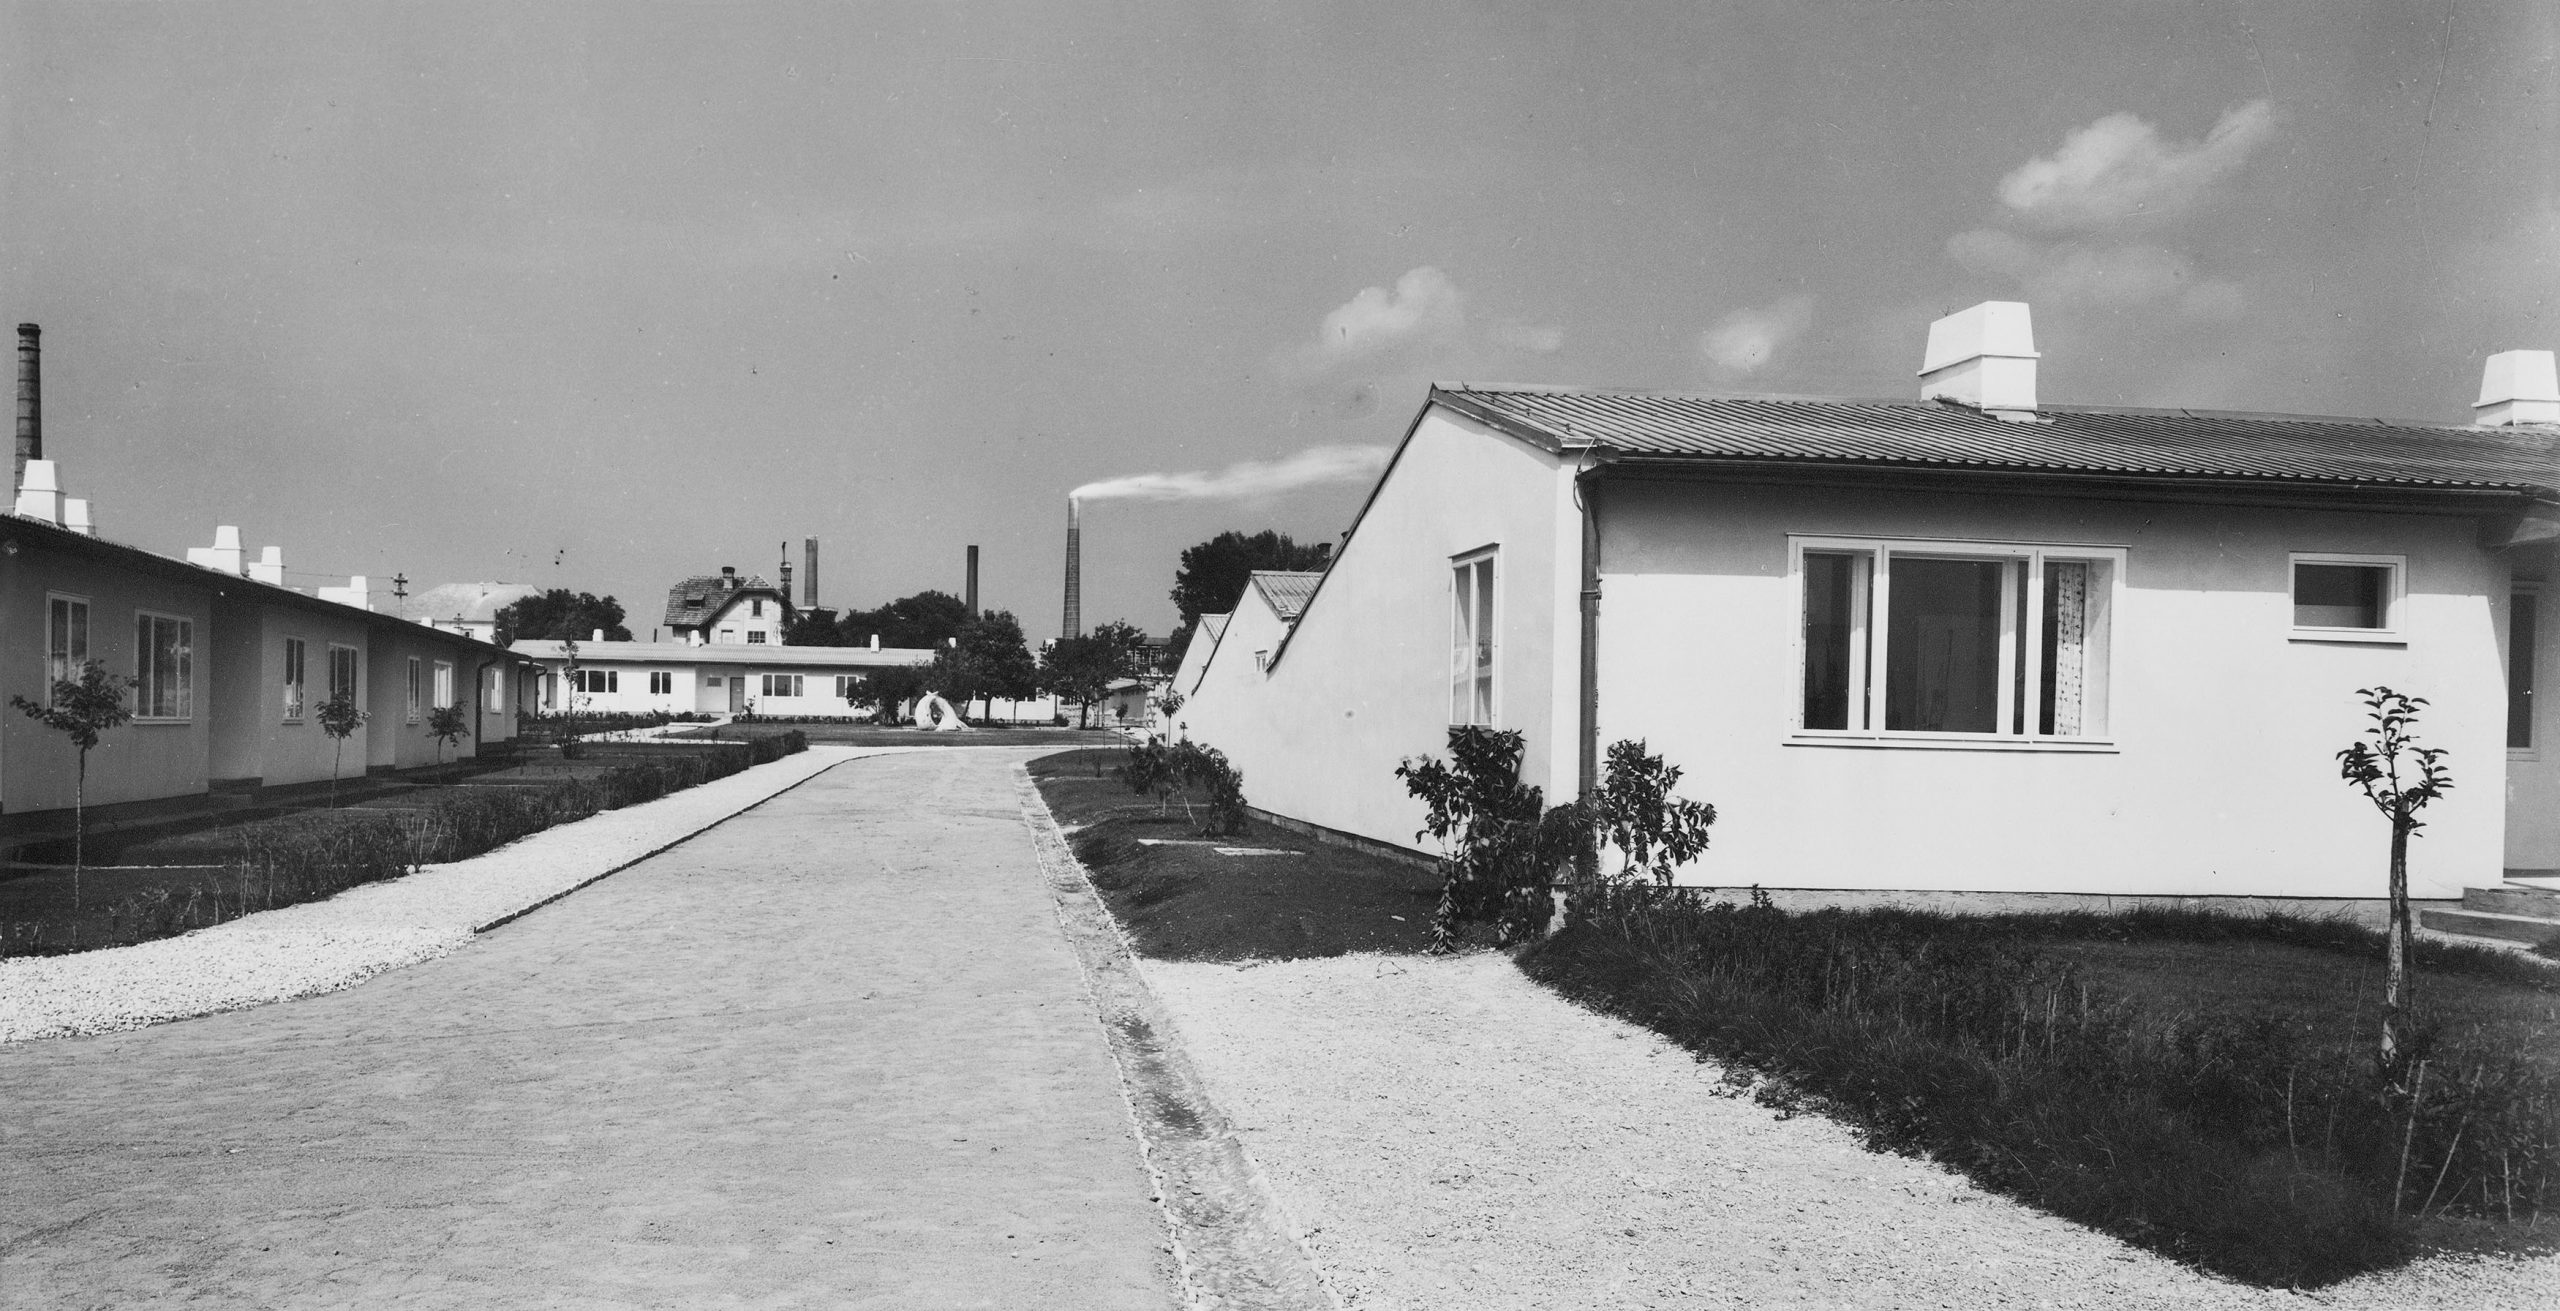 schwarz-weiß Ansicht eines Straßenzugs mit kleinen eingeschoßigen Wohnhäusern mit Satteldach. Fabriksschlote im Hintergrund